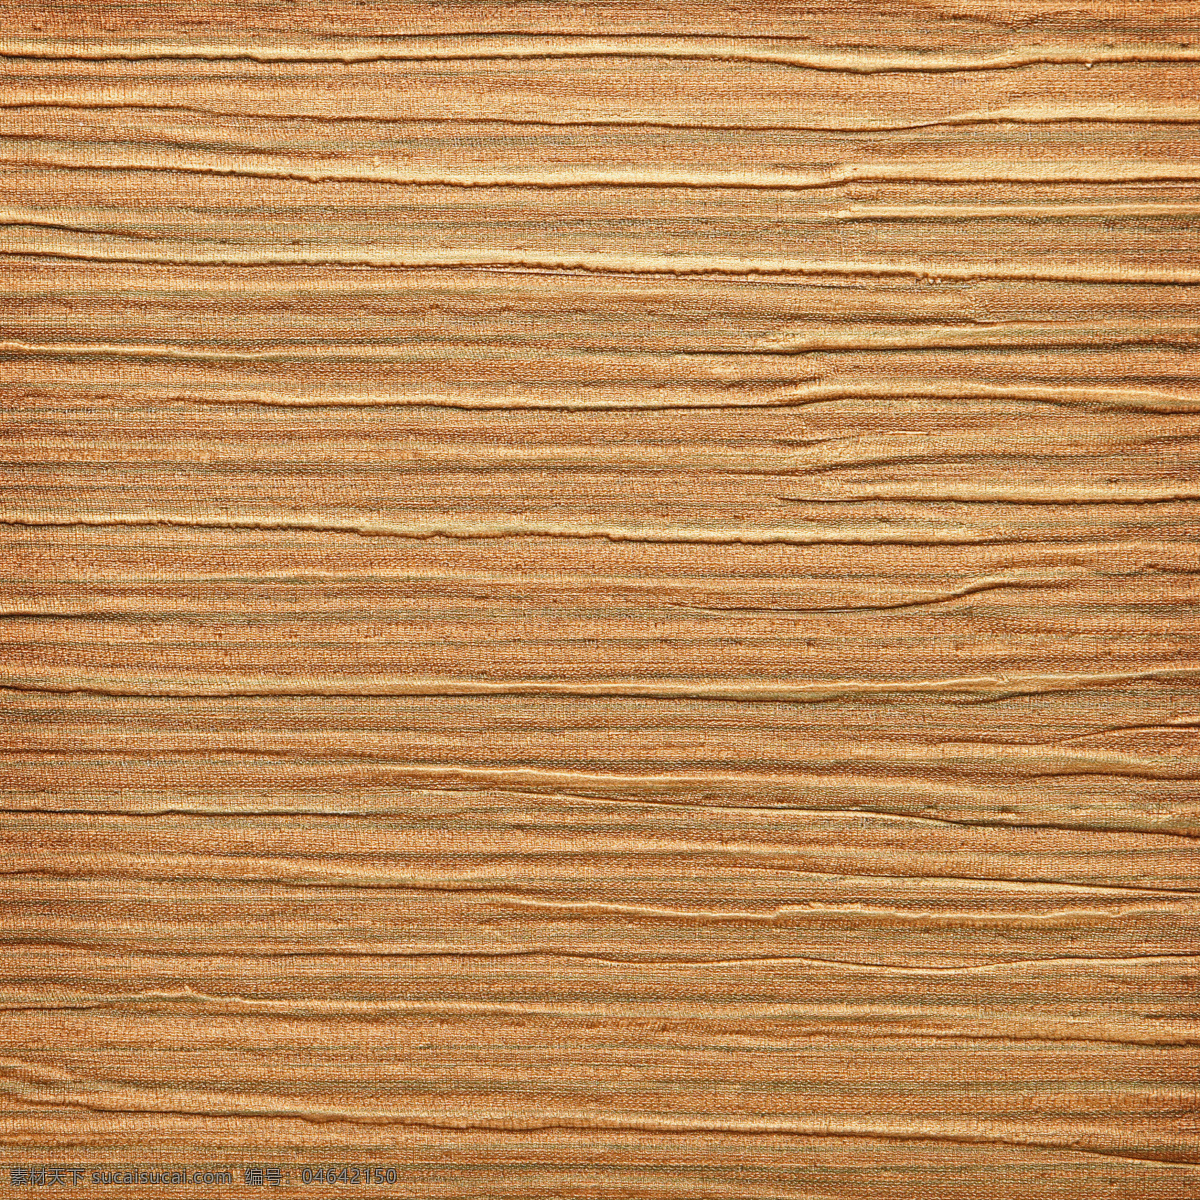 覆盖 层 布 褶皱 木纹 背景 高清 大图 木板 木质 材质 贴图 布纹 棕色